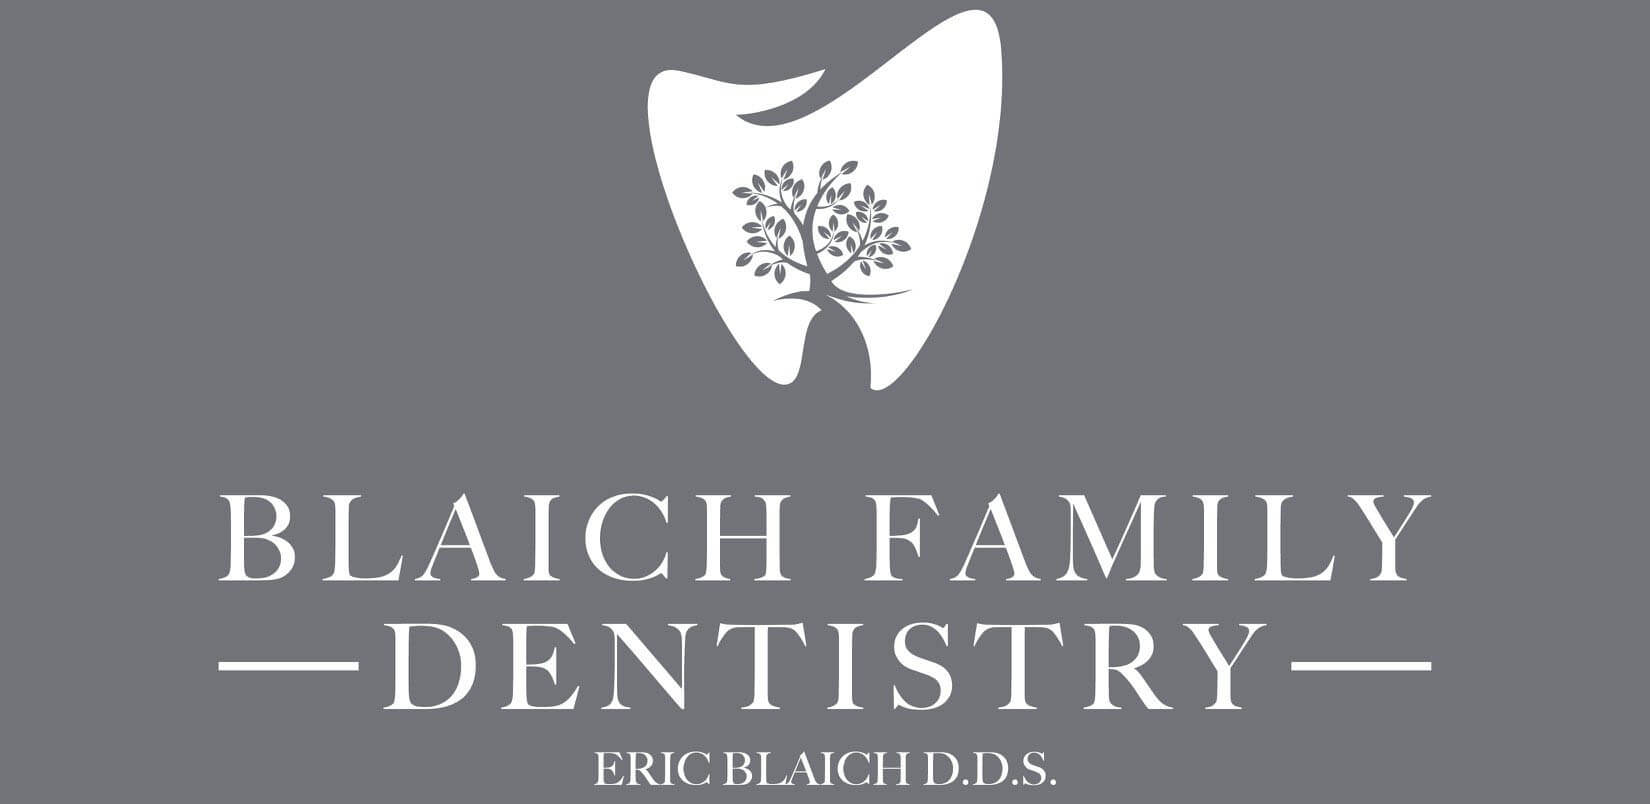 Blaich Family Dentistry 500 Sponsor